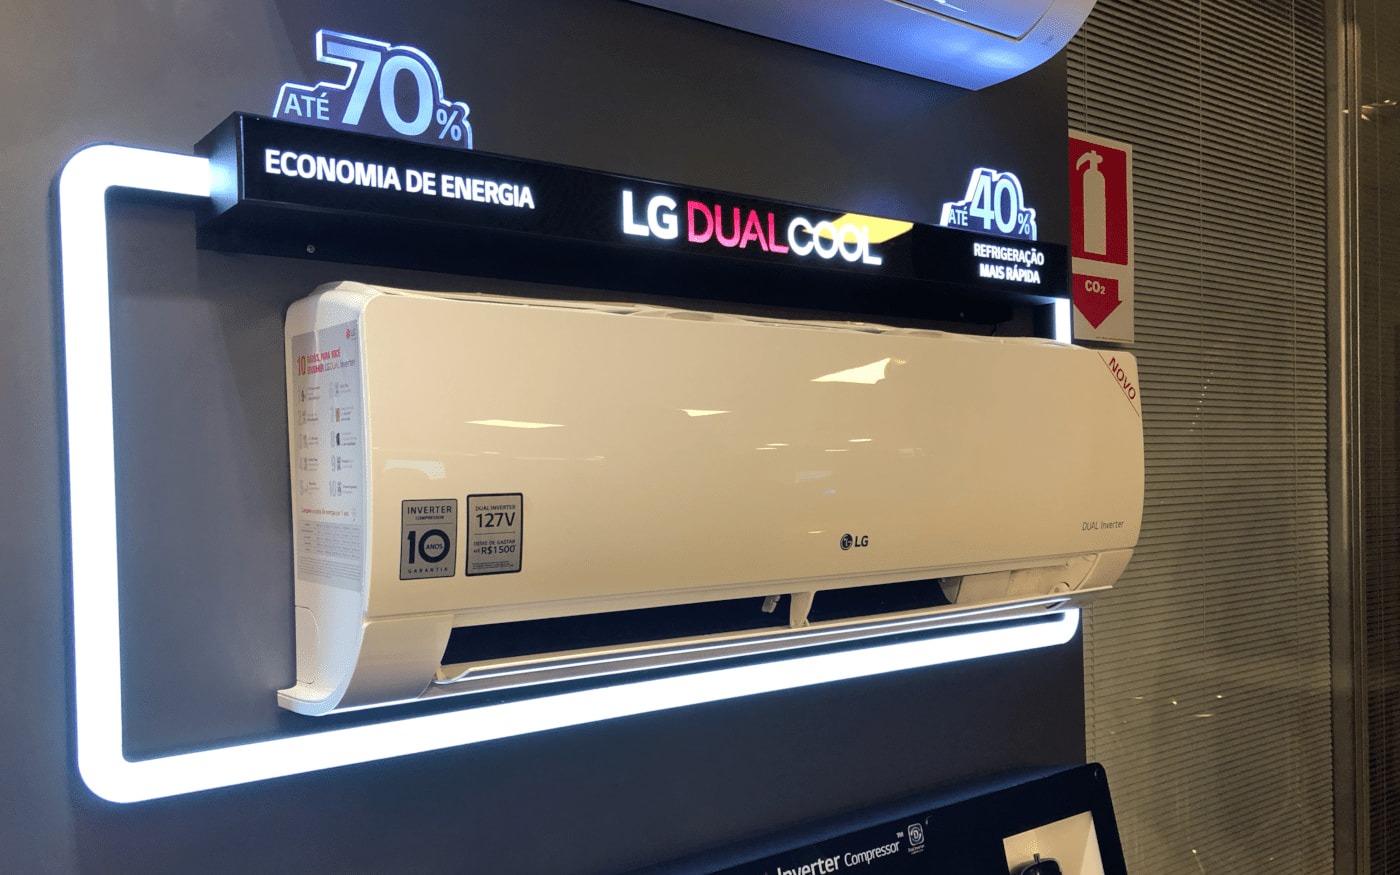 LG DUAL INVERTER: Um ar condicionado eficiente e econômico com garantia de 10 anos